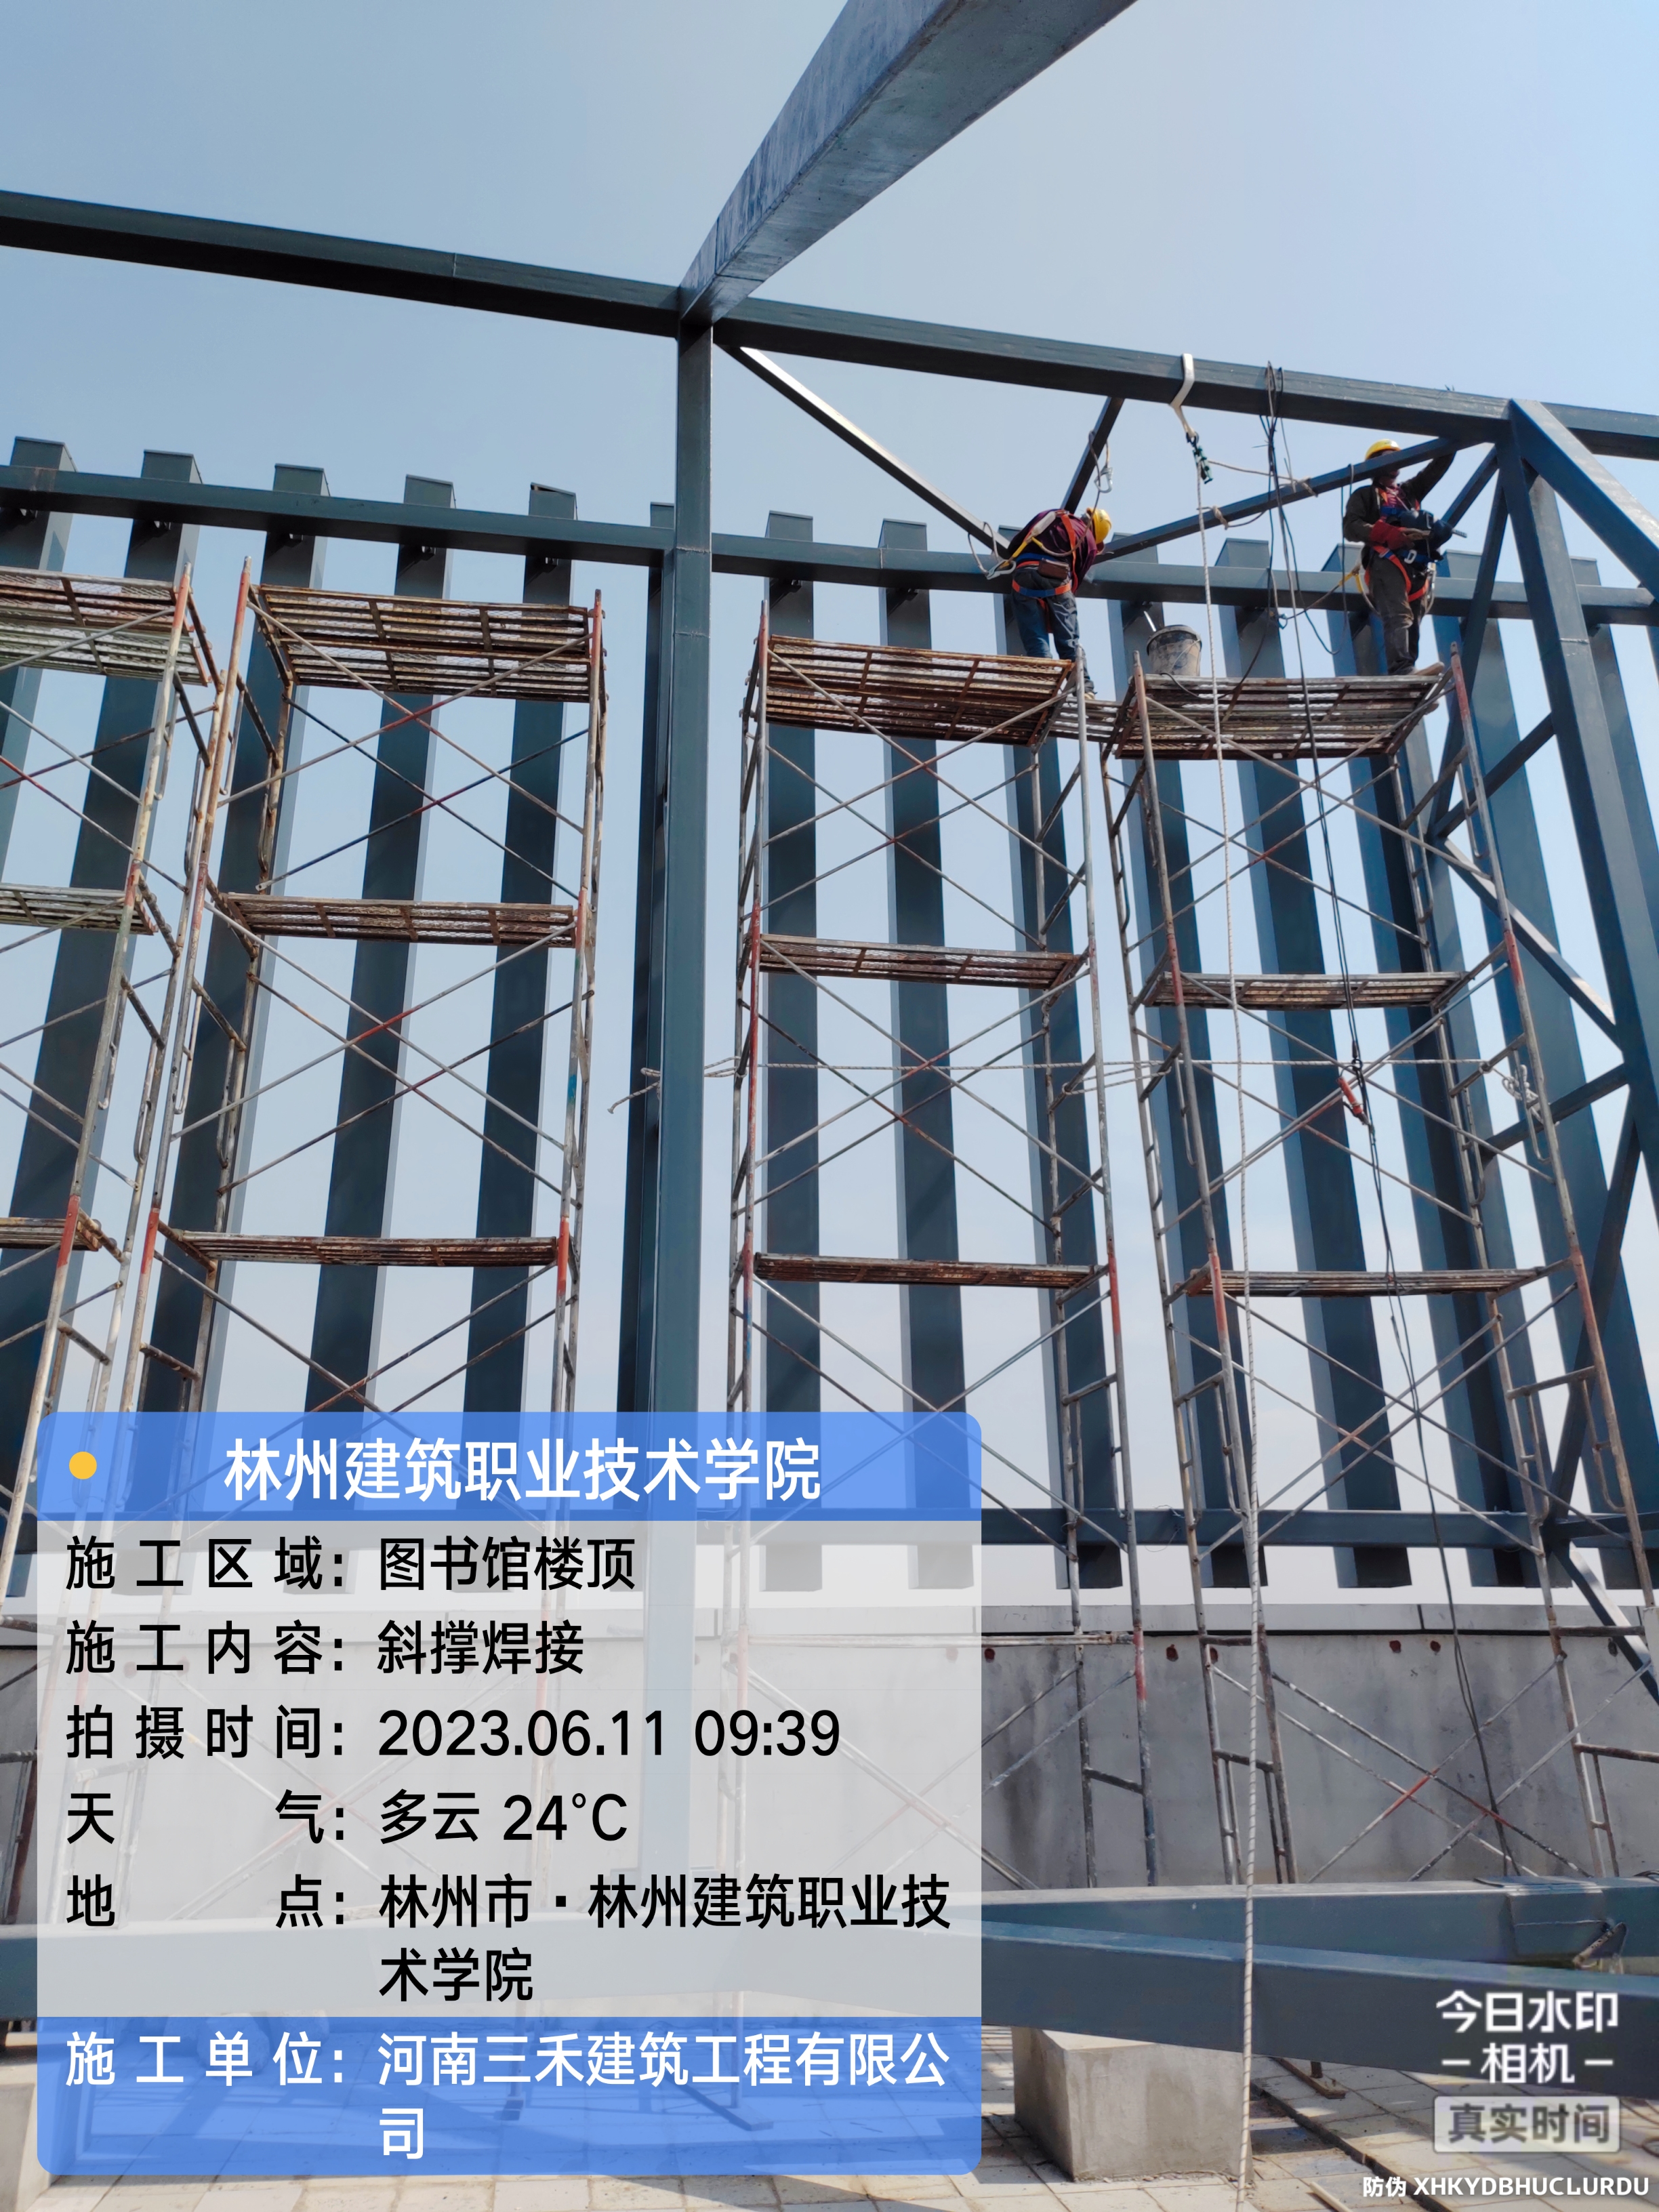 林州建筑职业技术学院图书馆LOGO改造工程(图2)